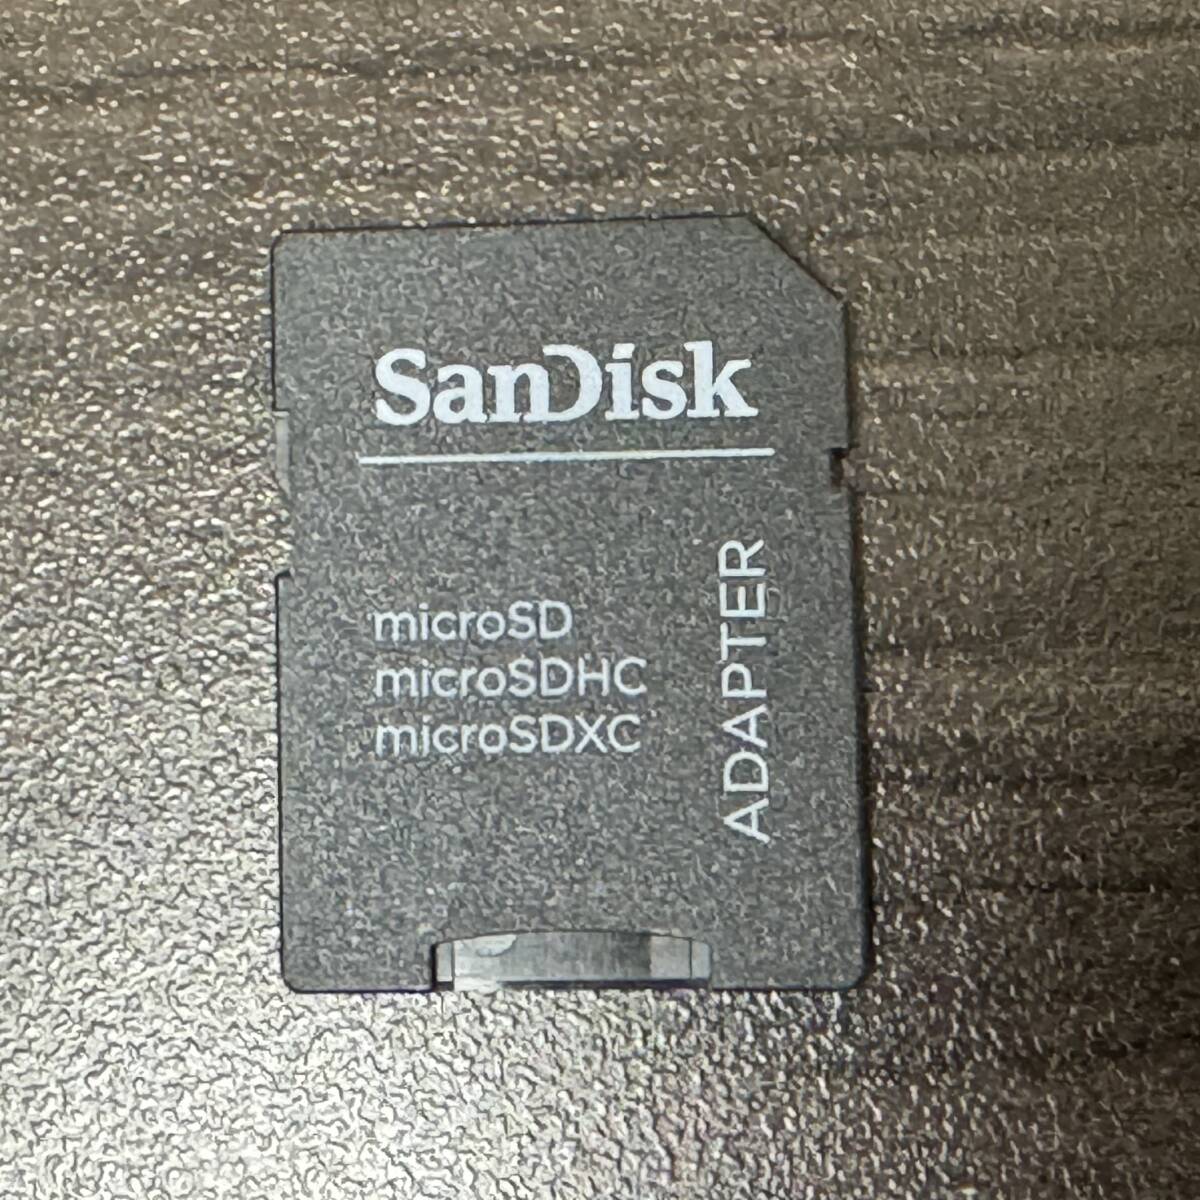 SanDisk б/у microSD карта 5 листов MAX ENDURANCE,EXTREME PRO др. 128GB